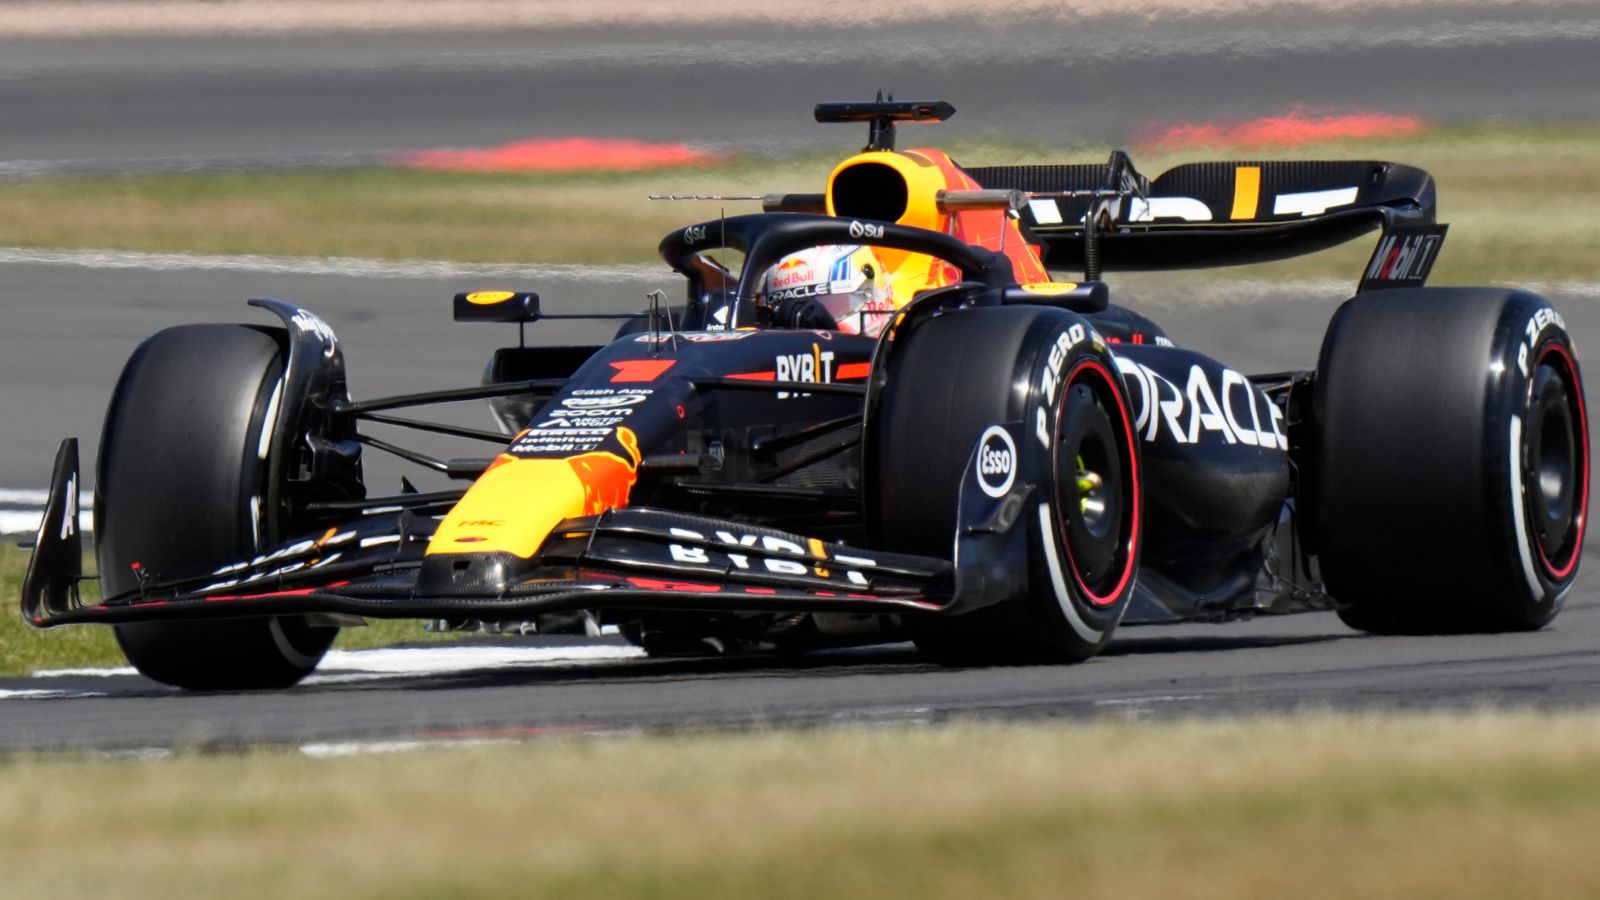 GP de Gran Bretaña, primera práctica: Max Verstappen lidera el uno-dos de Red Bull con Alex Albon en un impresionante tercer lugar para Williams